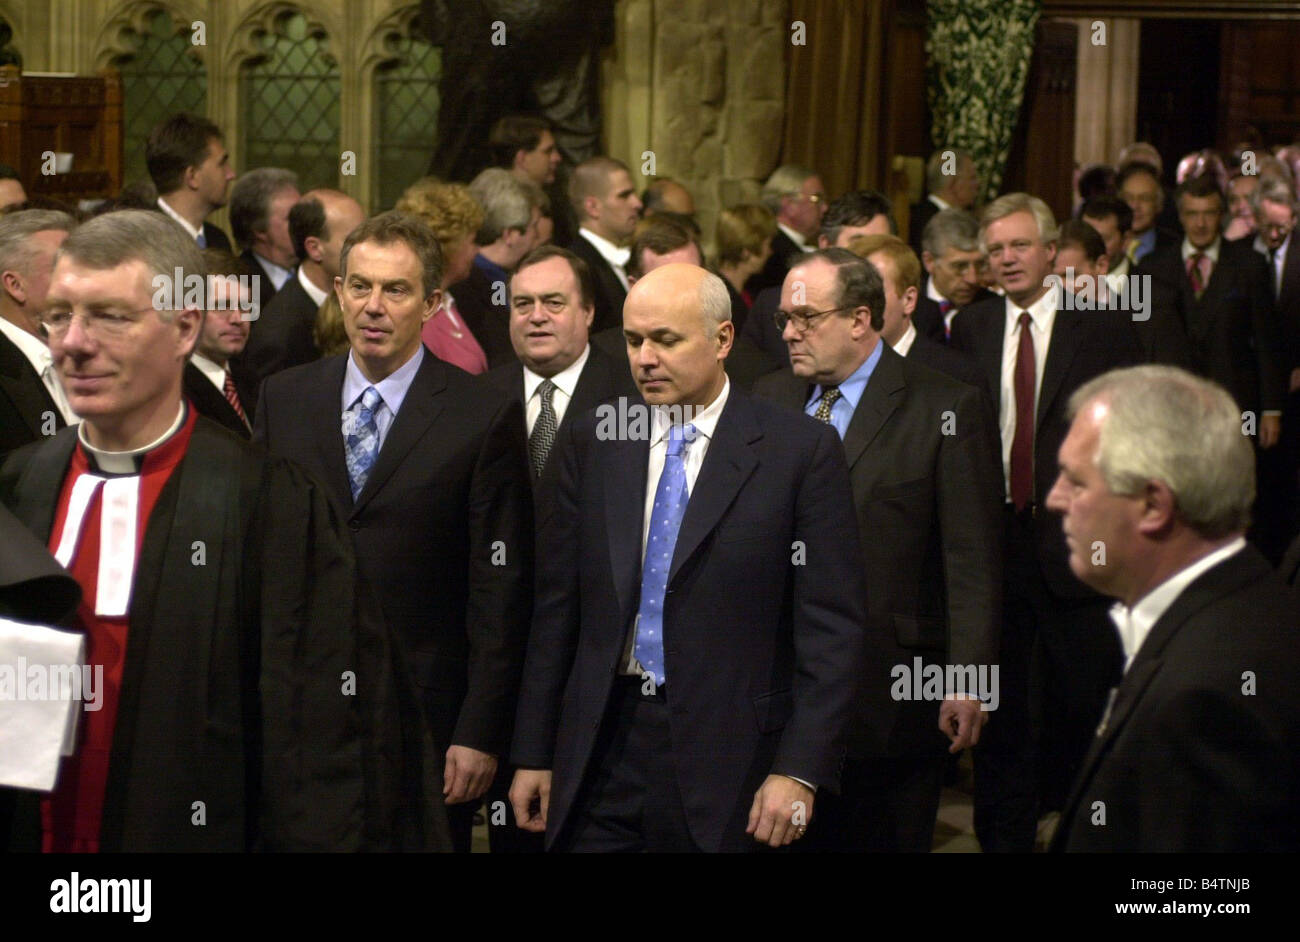 Il primo ministro Tony Blair ha lasciato il novembre 2002 e il leader dell opposizione Iain Duncan Smith lascia la lobby di membri della Camera dei comuni per la House of Lords mercoledì novembre 2002 per sentire la Regina Elisabetta II s Discorso durante lo stato apertura del Parlamento europeo a Londra Mirrorpix Foto Stock